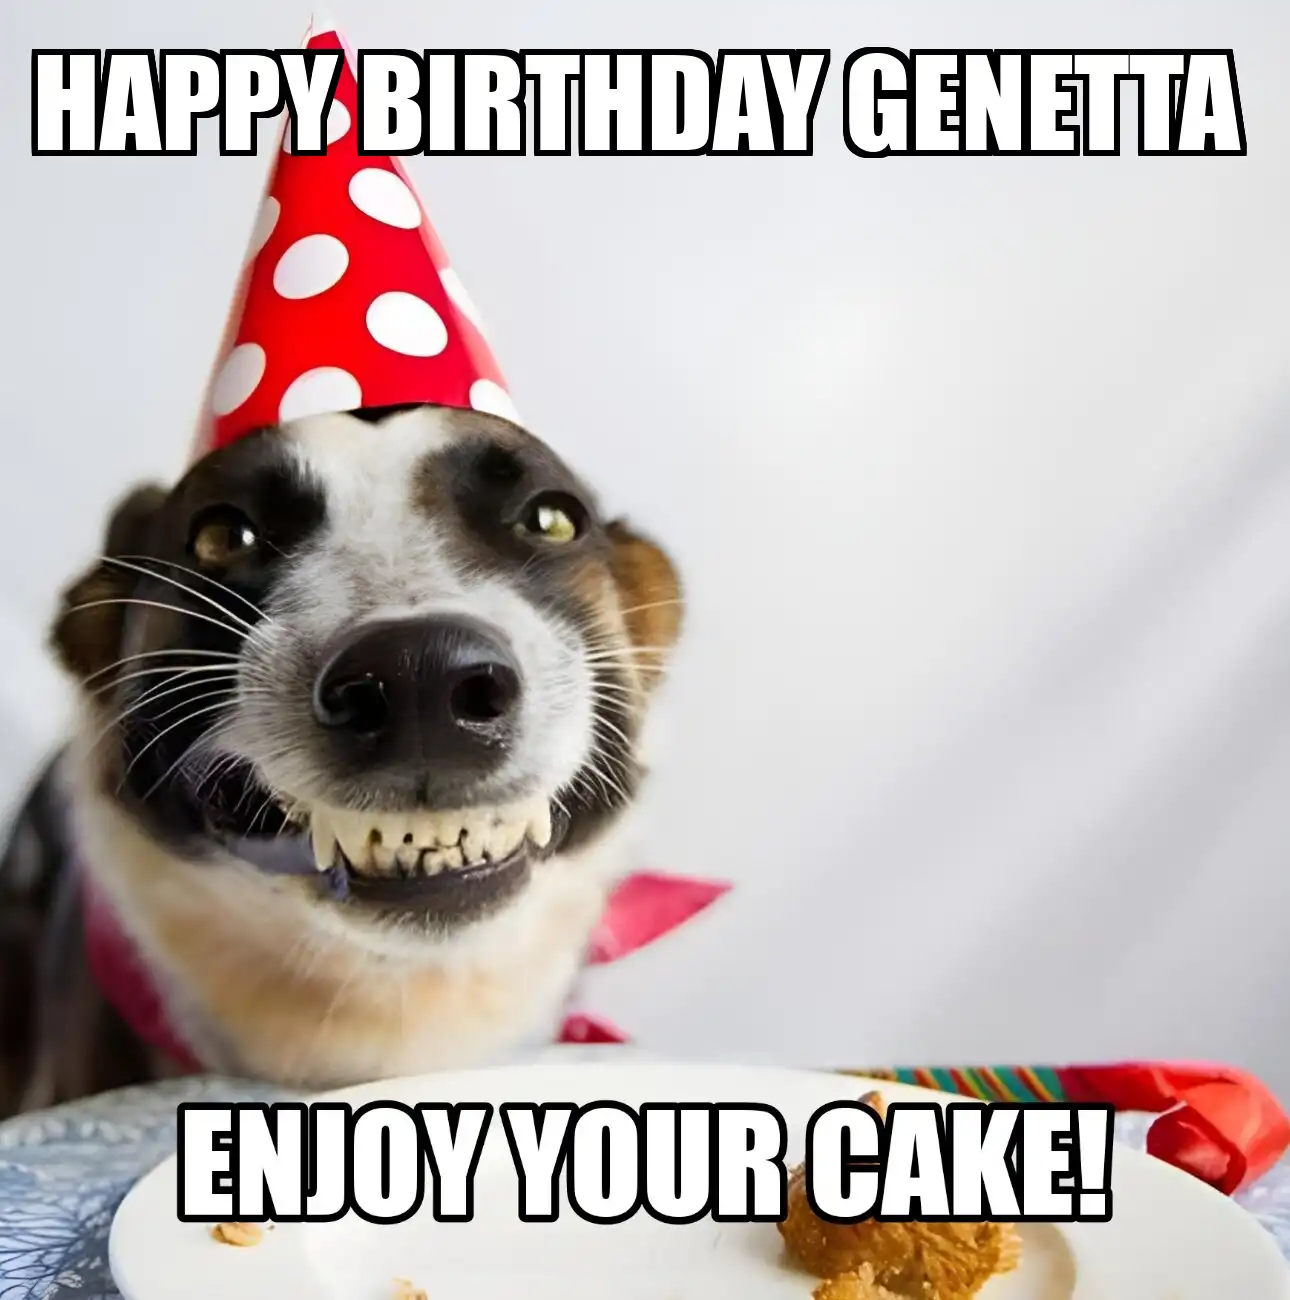 Happy Birthday Genetta Enjoy Your Cake Dog Meme